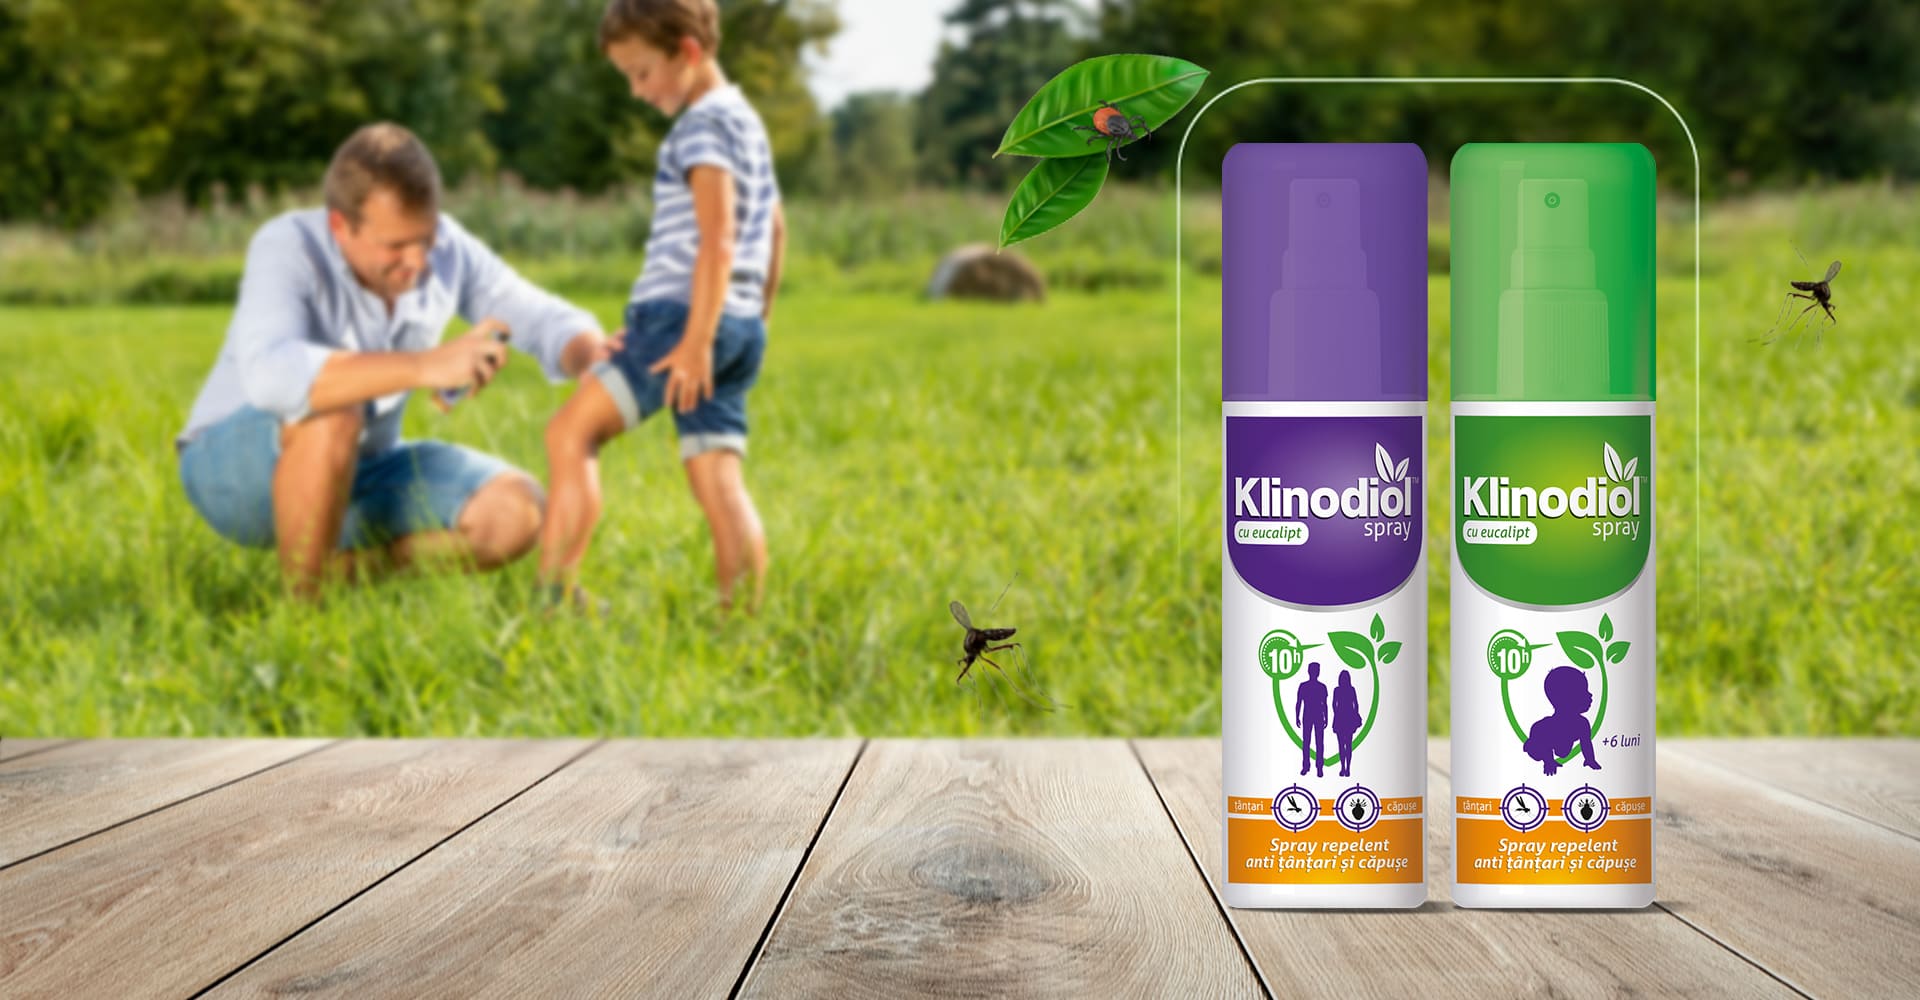 spray repelent - Soluția la îndemâna oricui împotriva insectelor și a căpușelor: Klinodiol, spray repelent cu eucalipt